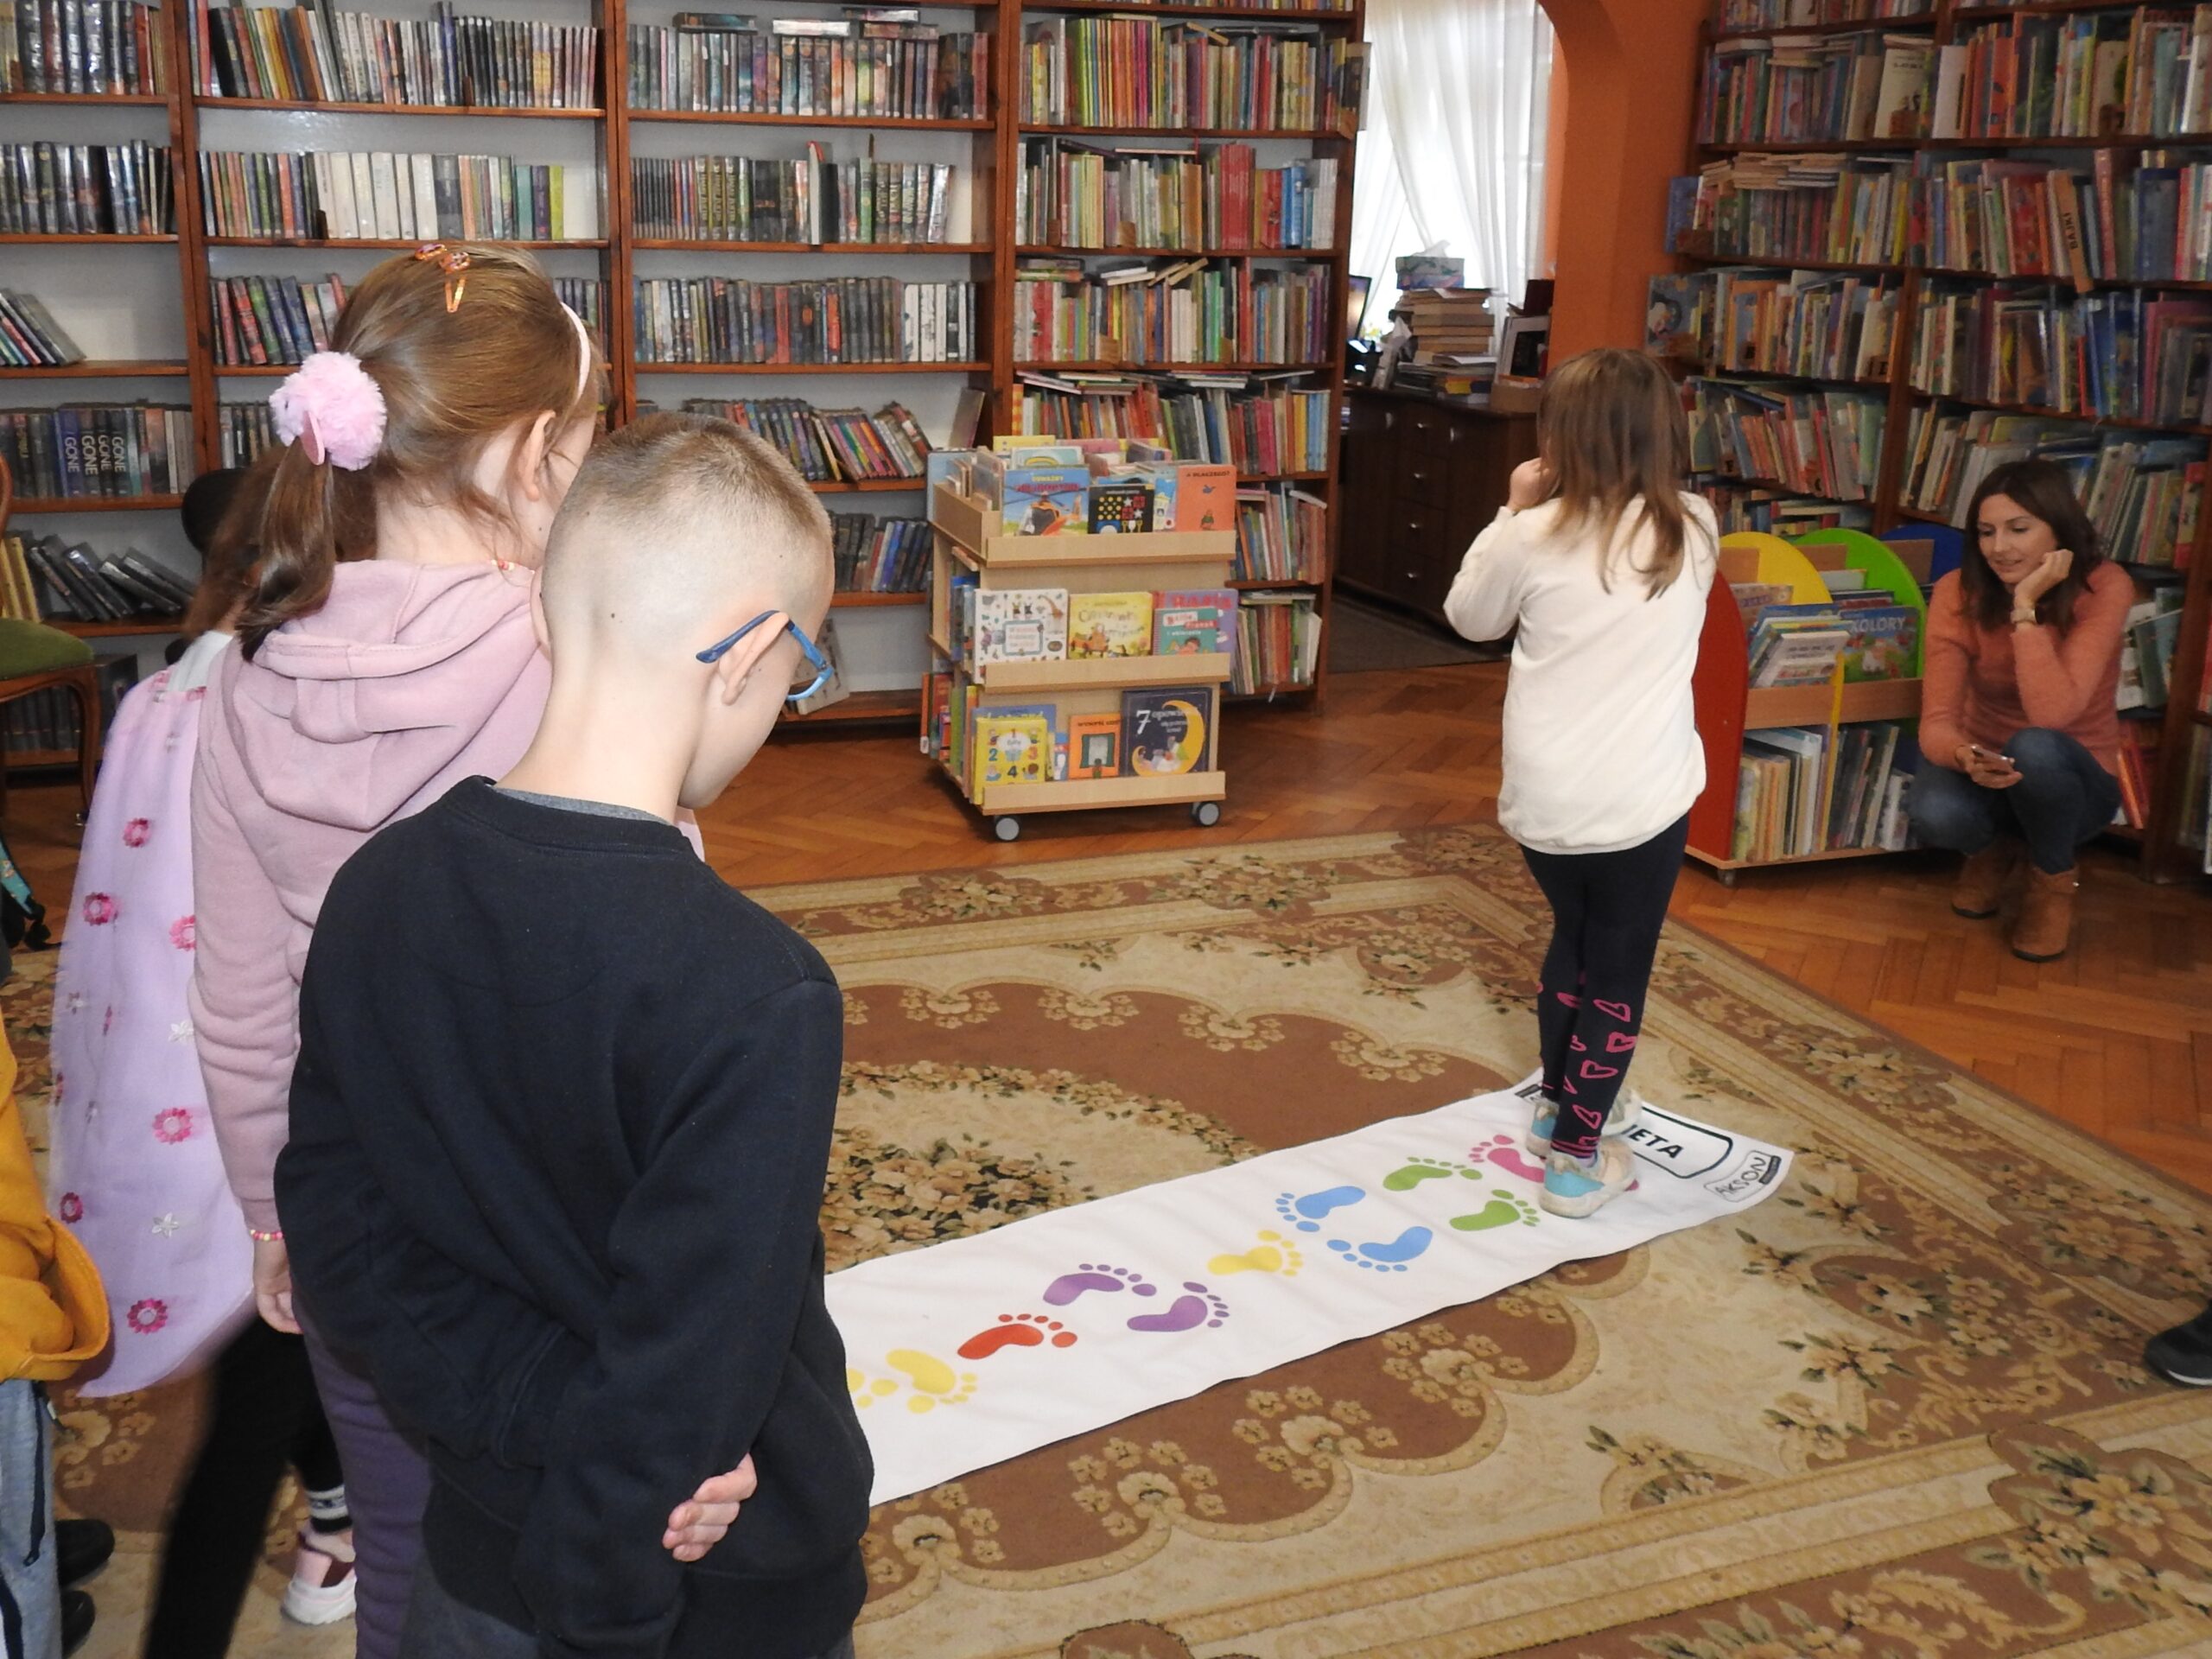 Na dywanie leży podłużna mata z ilustracjami kolorowych stóp. Przed nią stoi kilkoro dzieci. Jedno dziecko znajduje się na macie. Jego stopy dopasowują się do tych nadrukowanych. Naprzeciwko dziecka kuca jedna osoba dorosła. W tle regały z książkami.